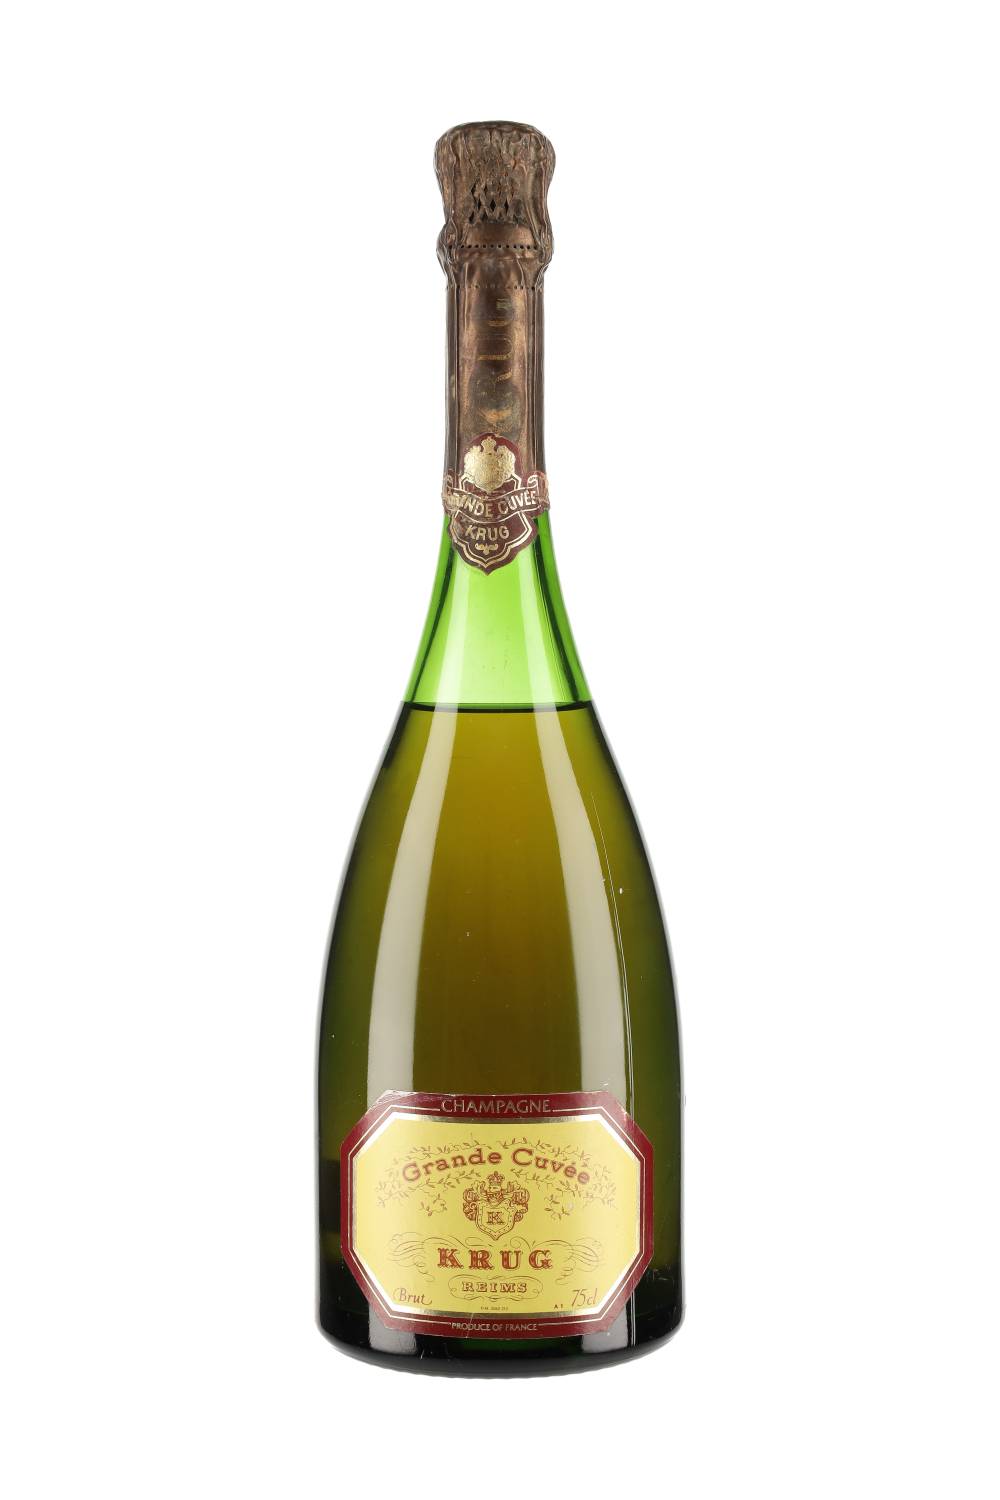 Krug Champagne Grande Cuvée Brut 2nd Edition NV – Total Grand Cru